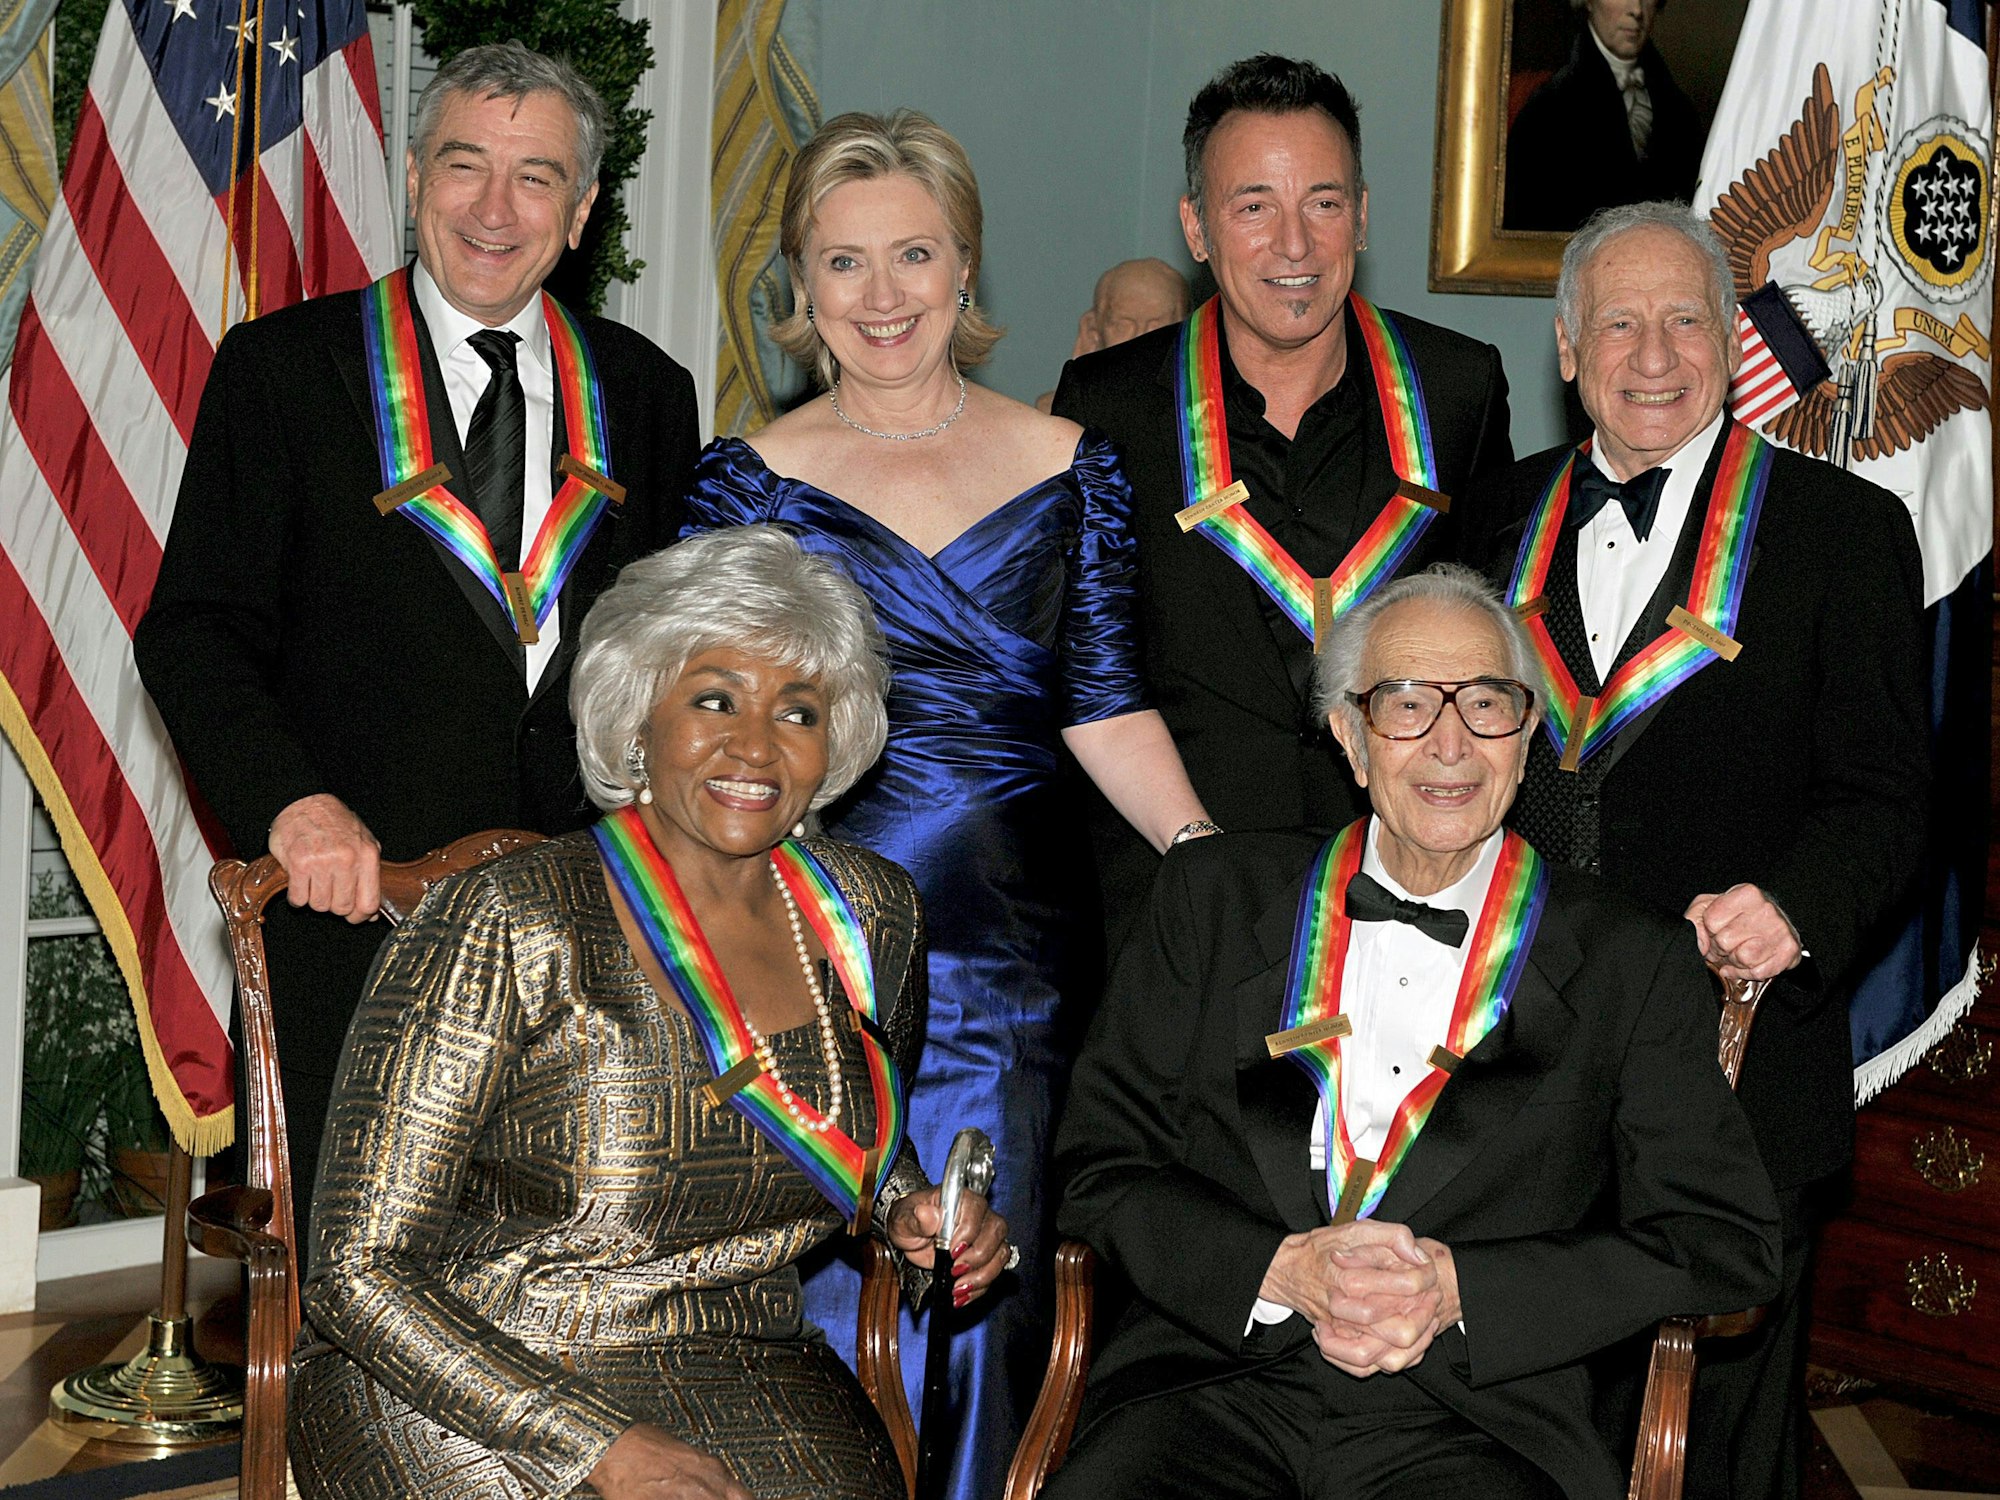 Reihe unten: Grace Bumbry (l.) und Dave Brubeck (r.), Reihe oben: Robert De Niro, Hillary Rodham Clinton, Bruce Springsteen und Mel Brooks (v.l.n.r.) bei der Verleihung des „Kennedy Center Honors“